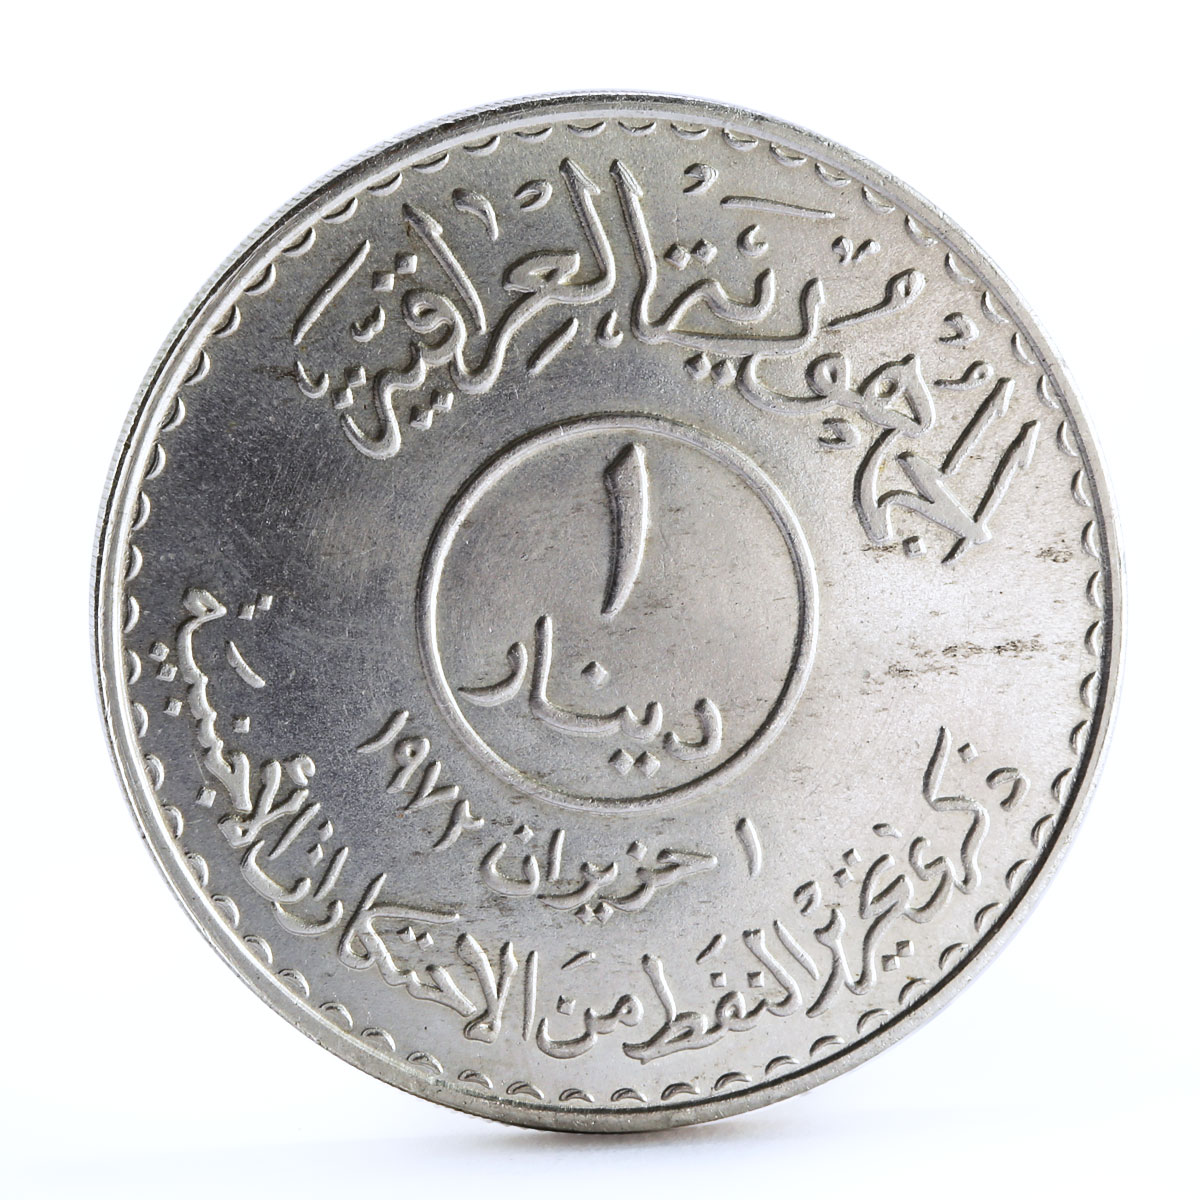 Iraq 1 dinar Oil Nationalization Sun Tanker Ship silver coin 1973